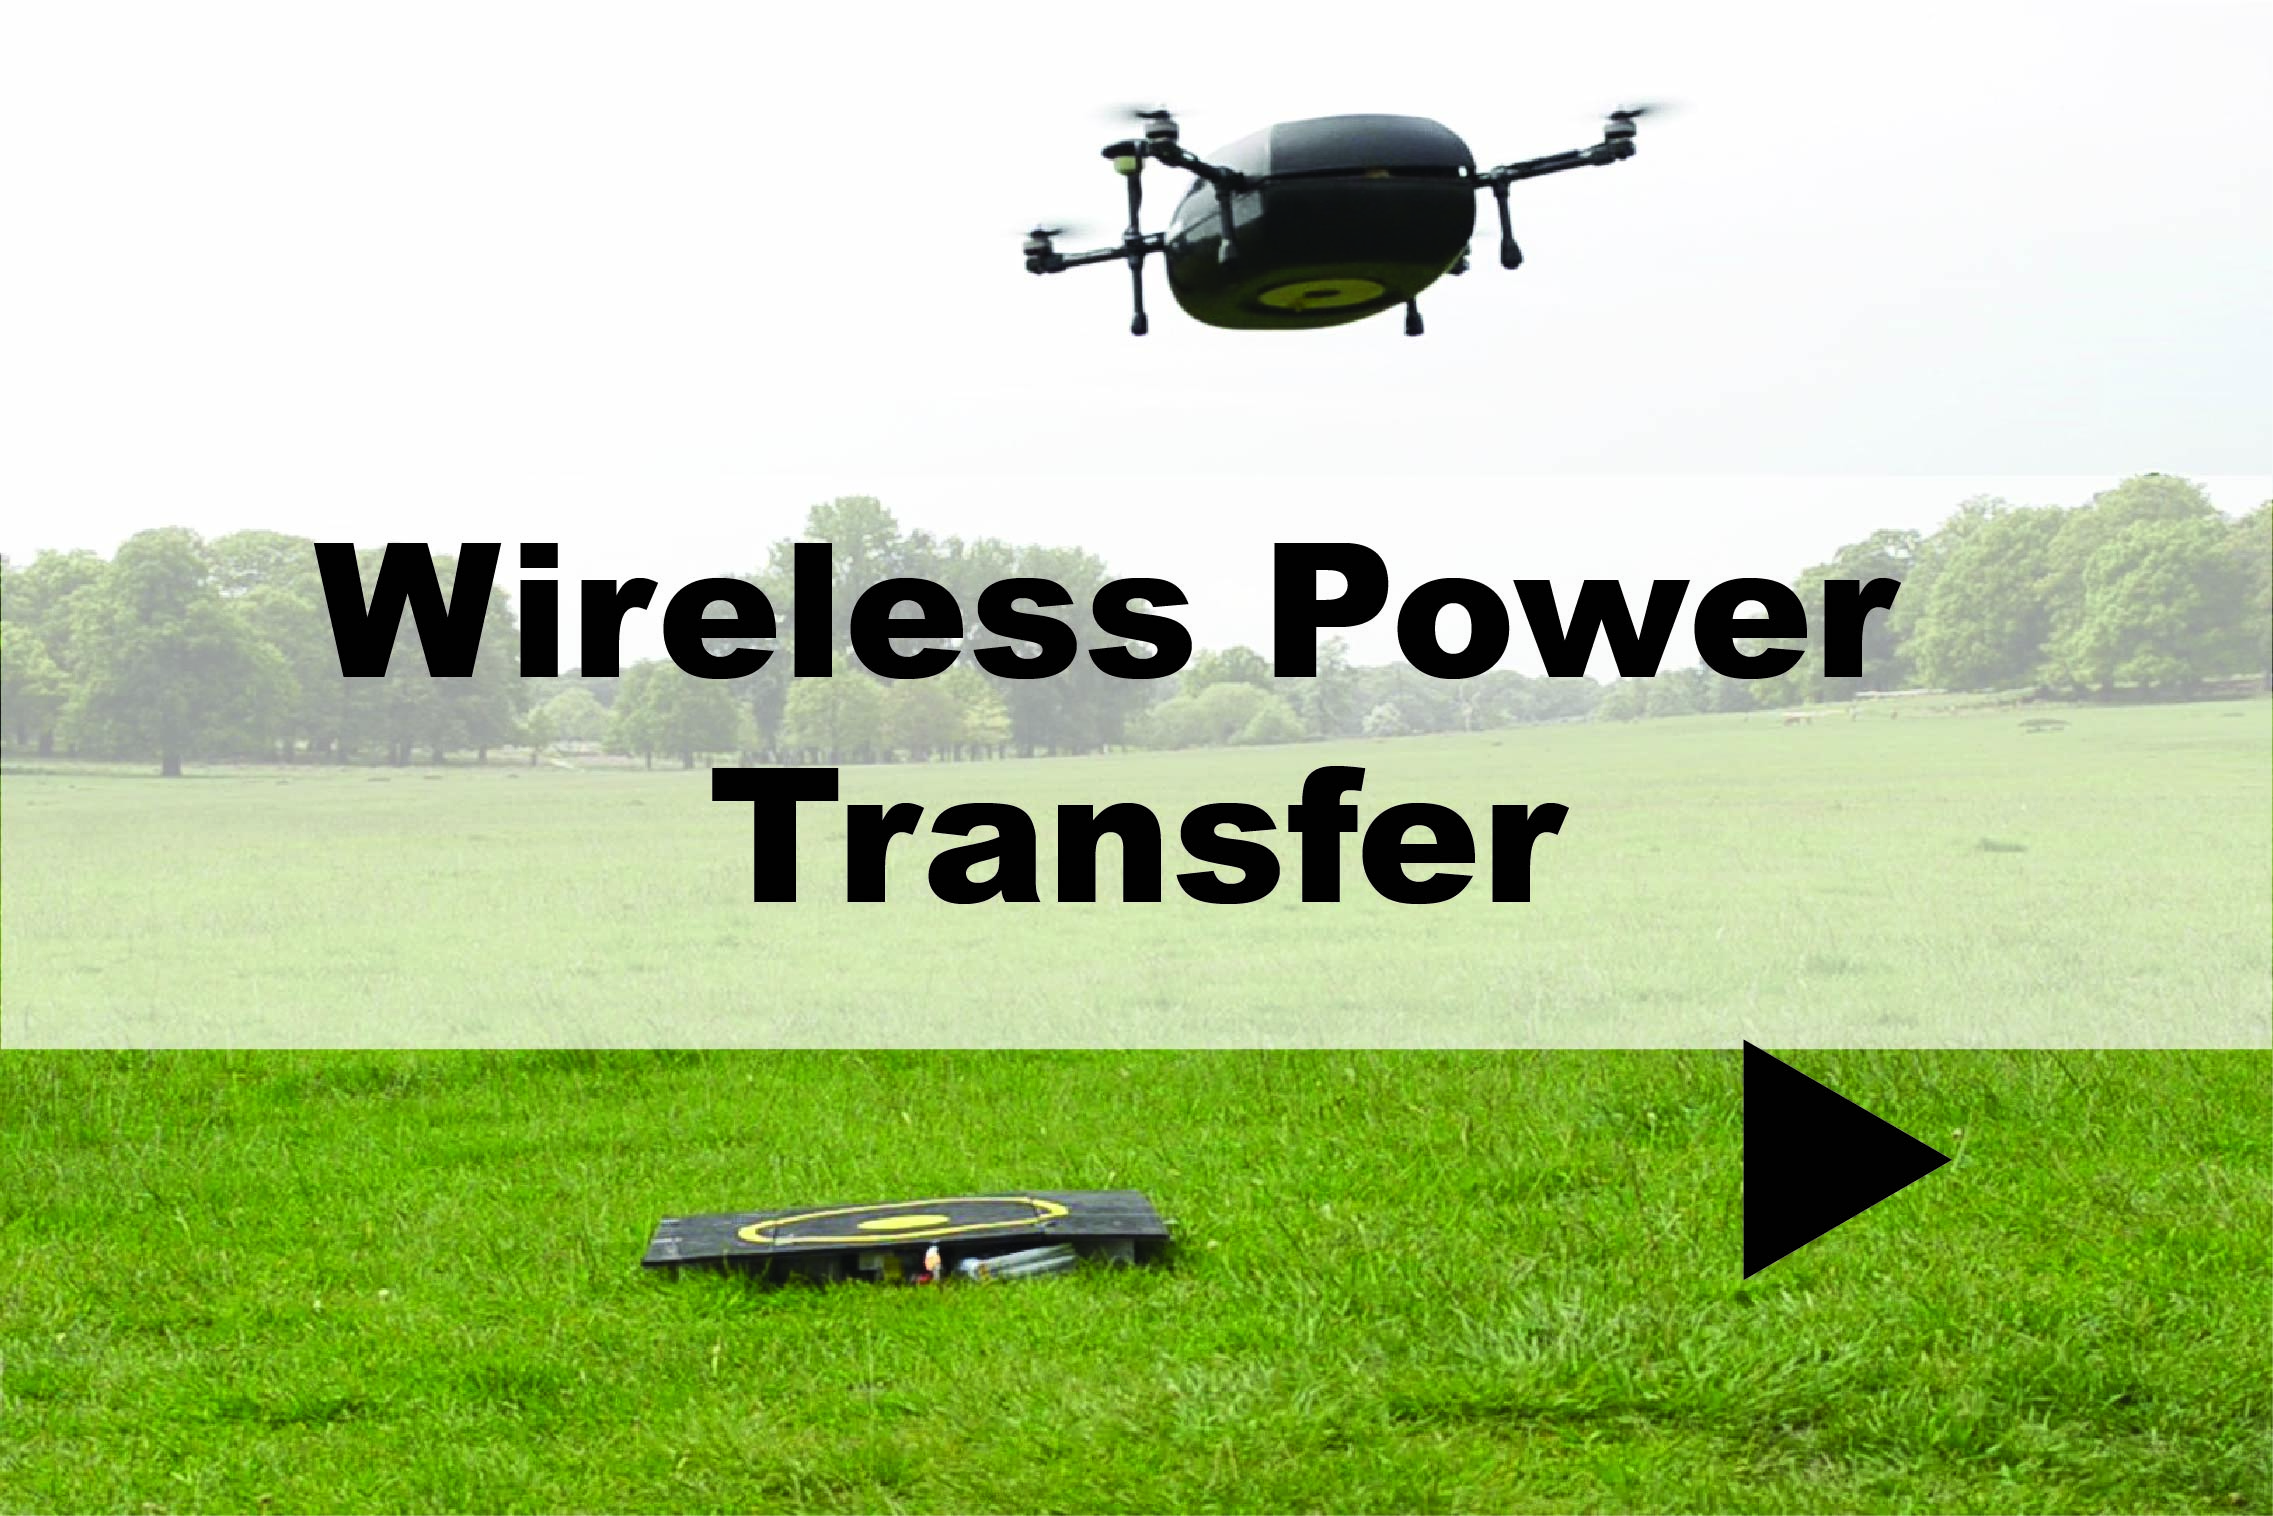 Wireless power transfer demo